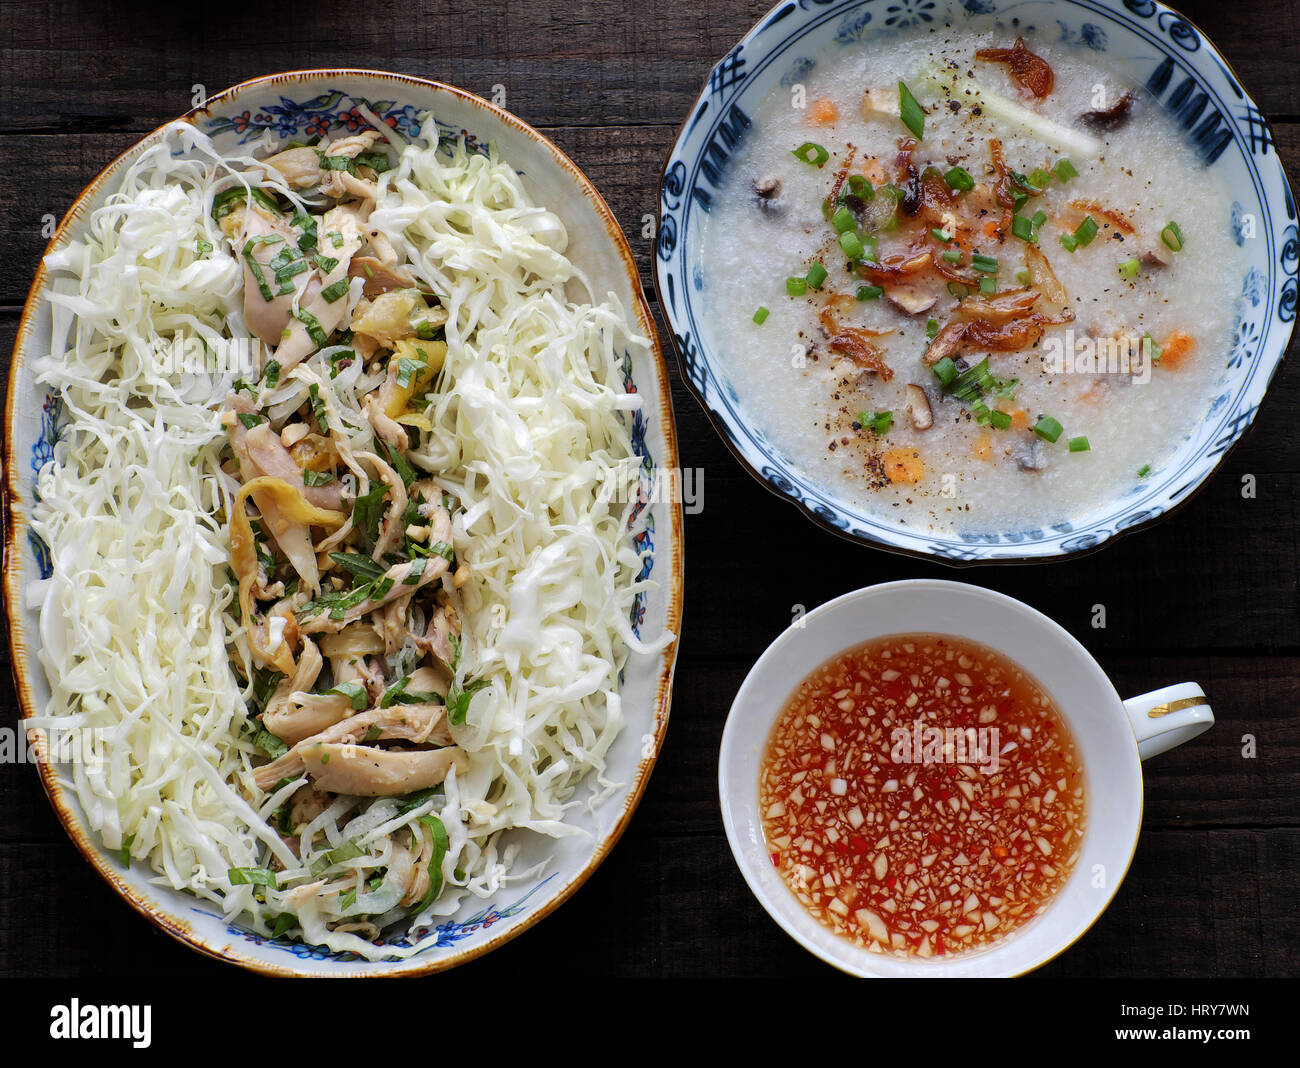 La cuisine asiatique pour les personnes malades, riz au poulet gruau de riz, carotte, oignon, chou, toon. Bol de soupe de poulet avec légumes, appelez chao ga Banque D'Images